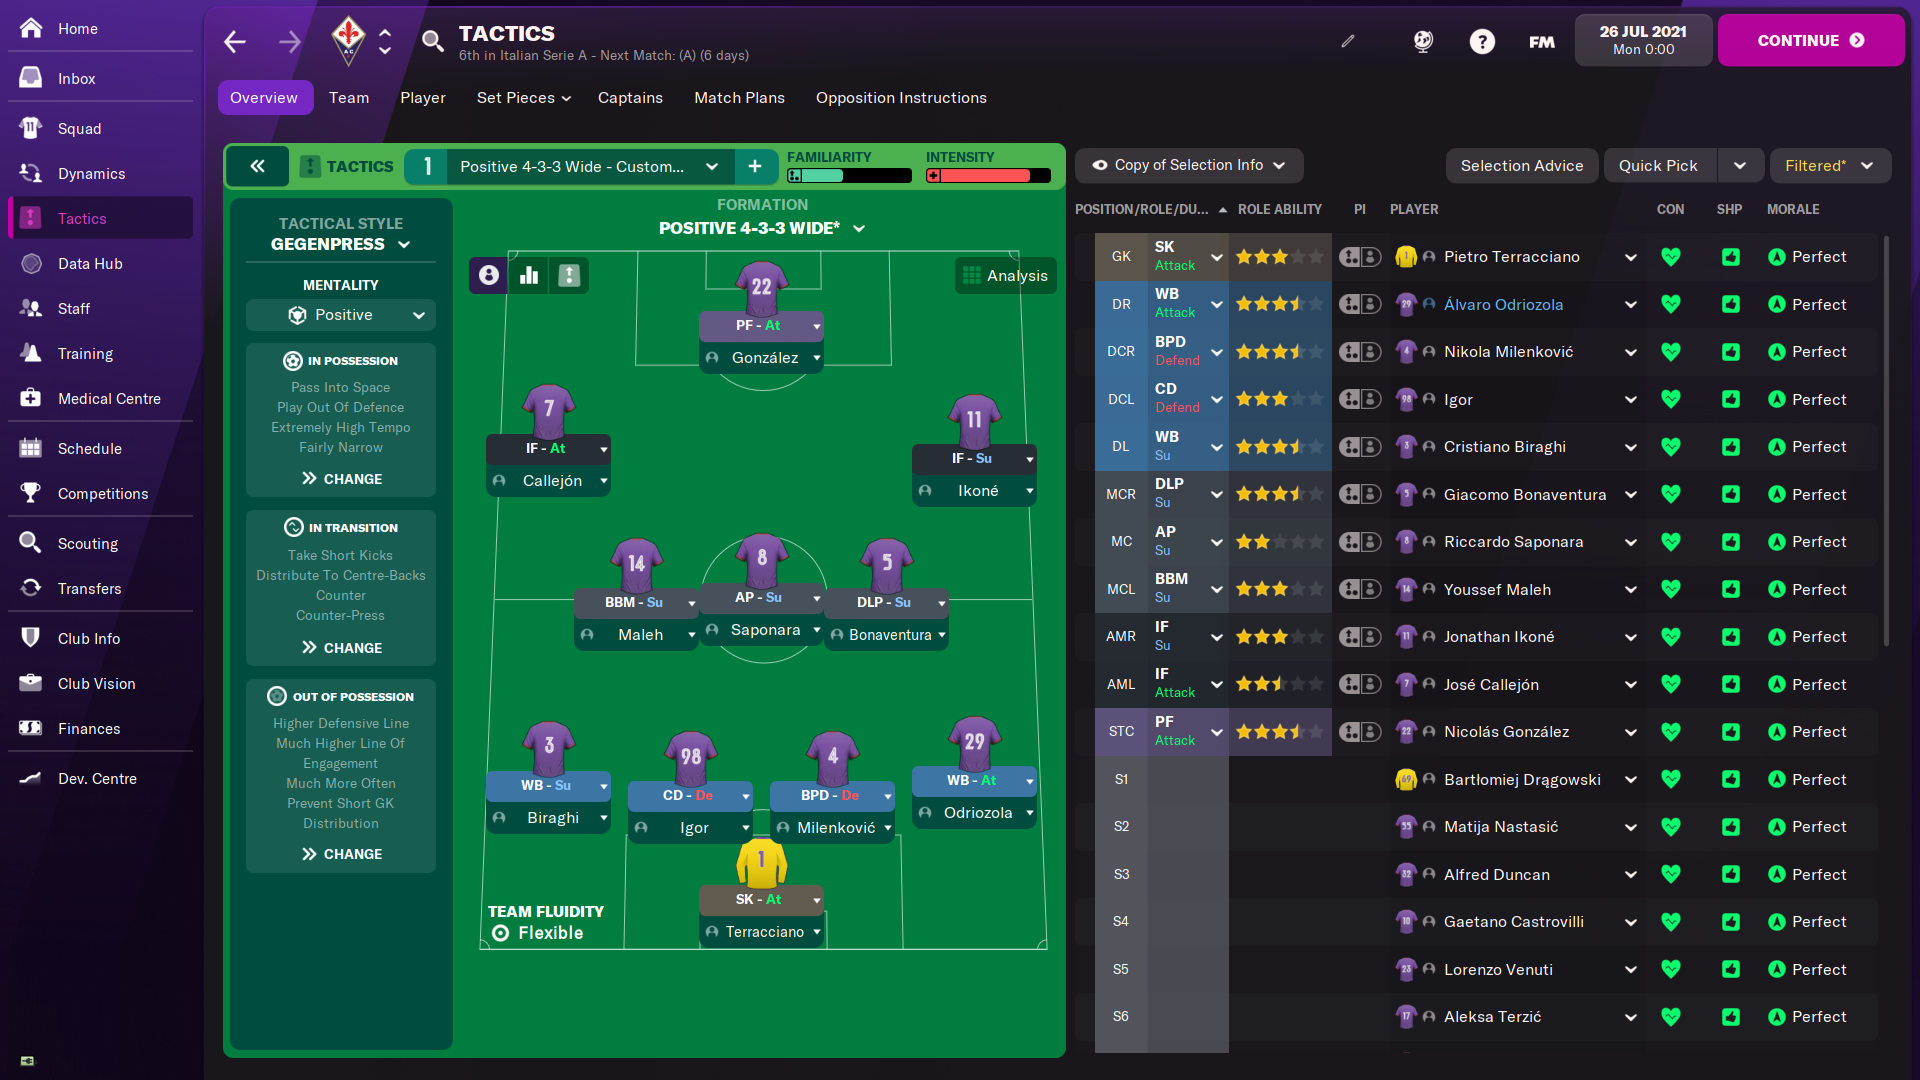 Fiorentina Tactics